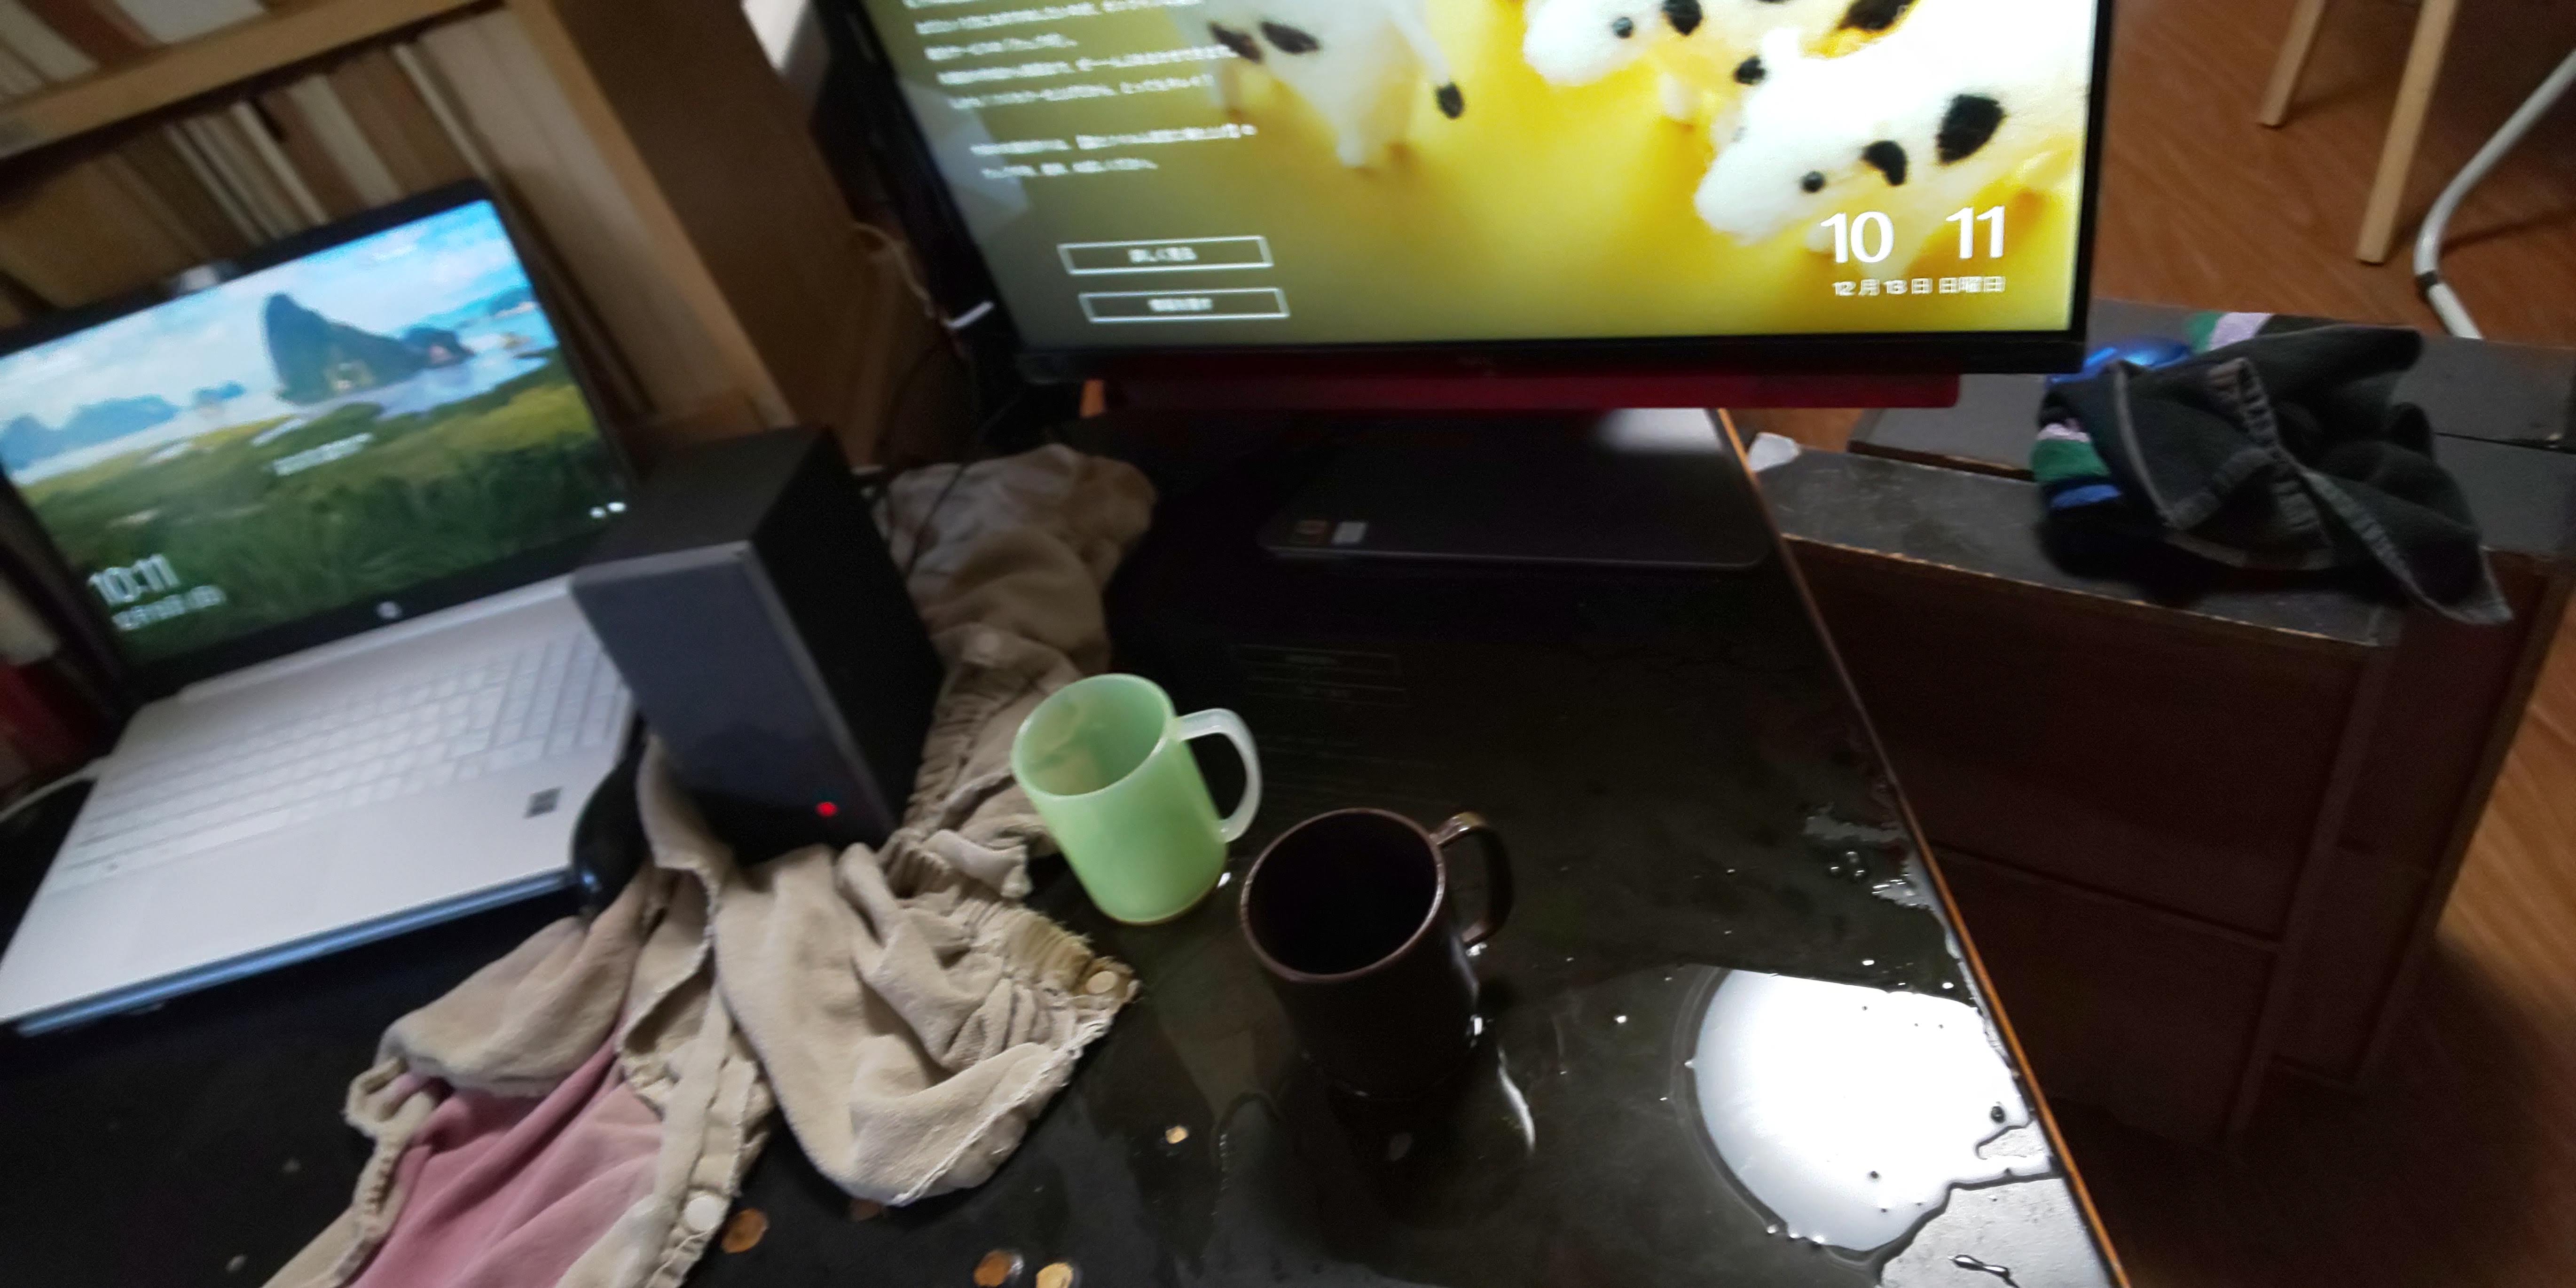 [ともみち テロ] ホットコーヒー2杯、パソコンのキーボードの上に !! わざわざ運んできて。自分のカップとお父さん(あたくし)のカップ。たぶん机の上に放った。(台所で洗い物してたので、瞬間は見ていません。) (キーボードは撤去済み。)